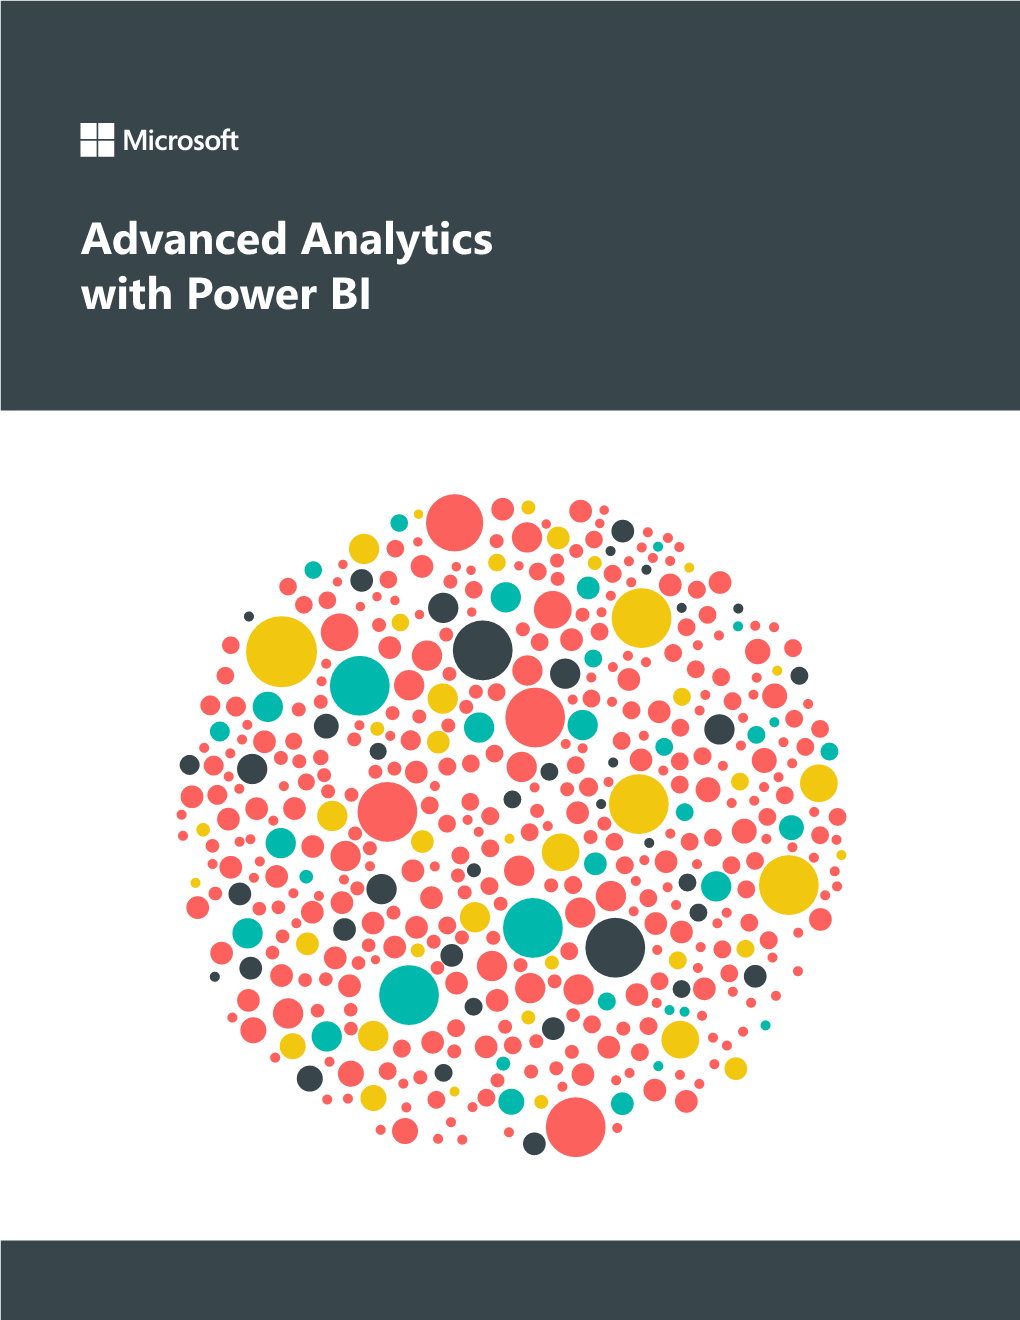 Advanced Analytics with Power BI